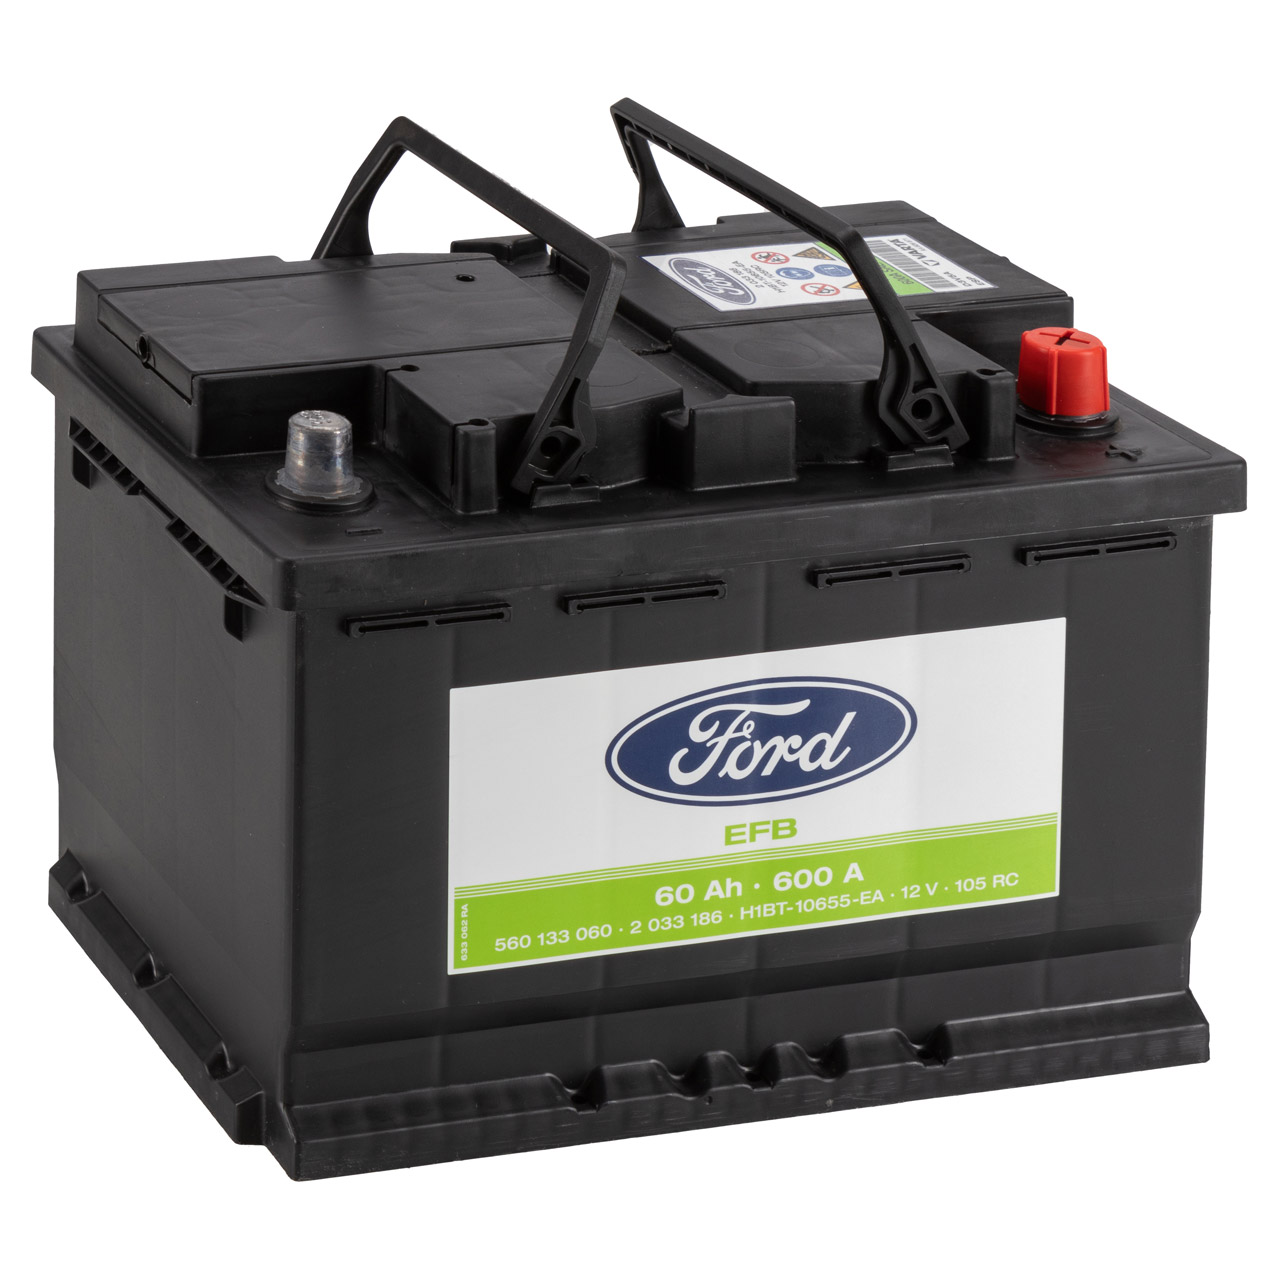 ORIGINAL Ford EFB Autobatterie Batterie Starterbatterie 12V 60Ah 600A 2033186